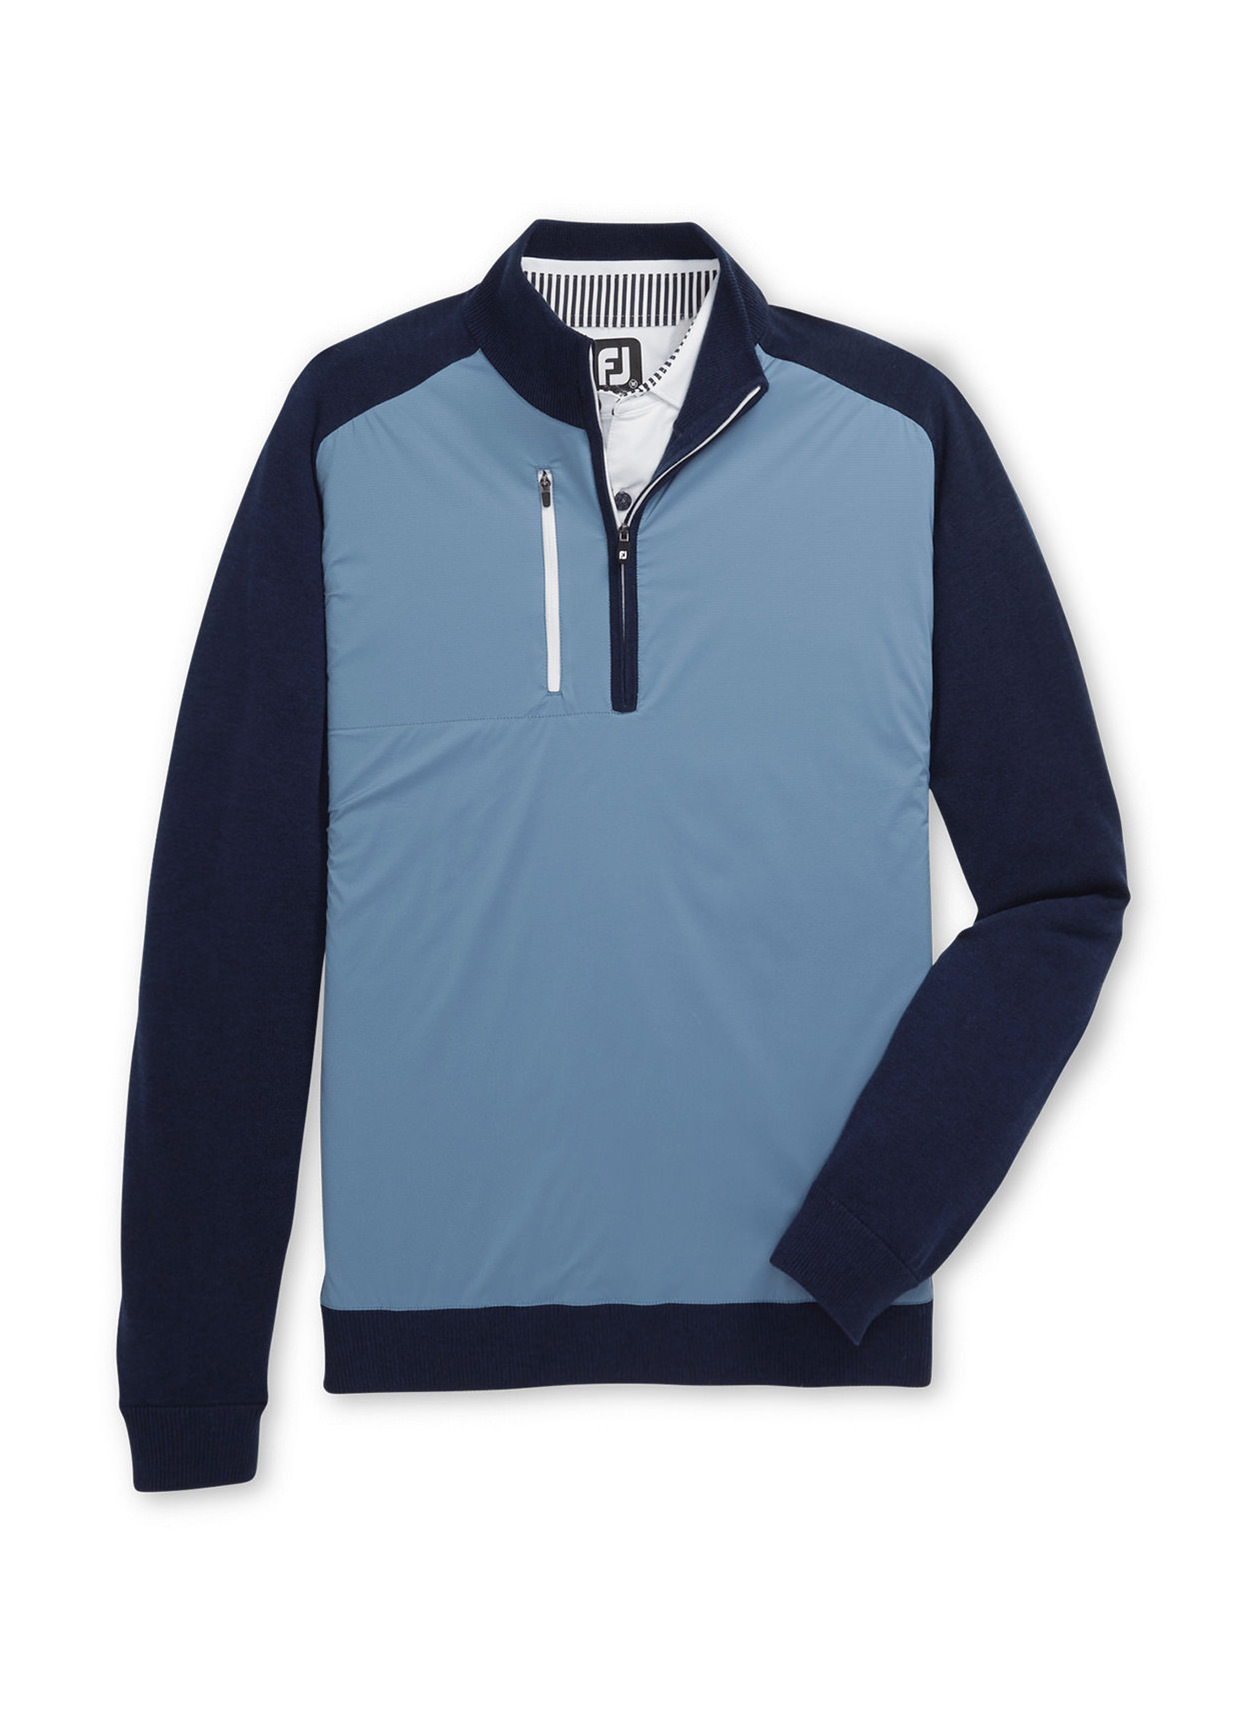 Men's 1/4 Zip Pullover Sweater - Navy